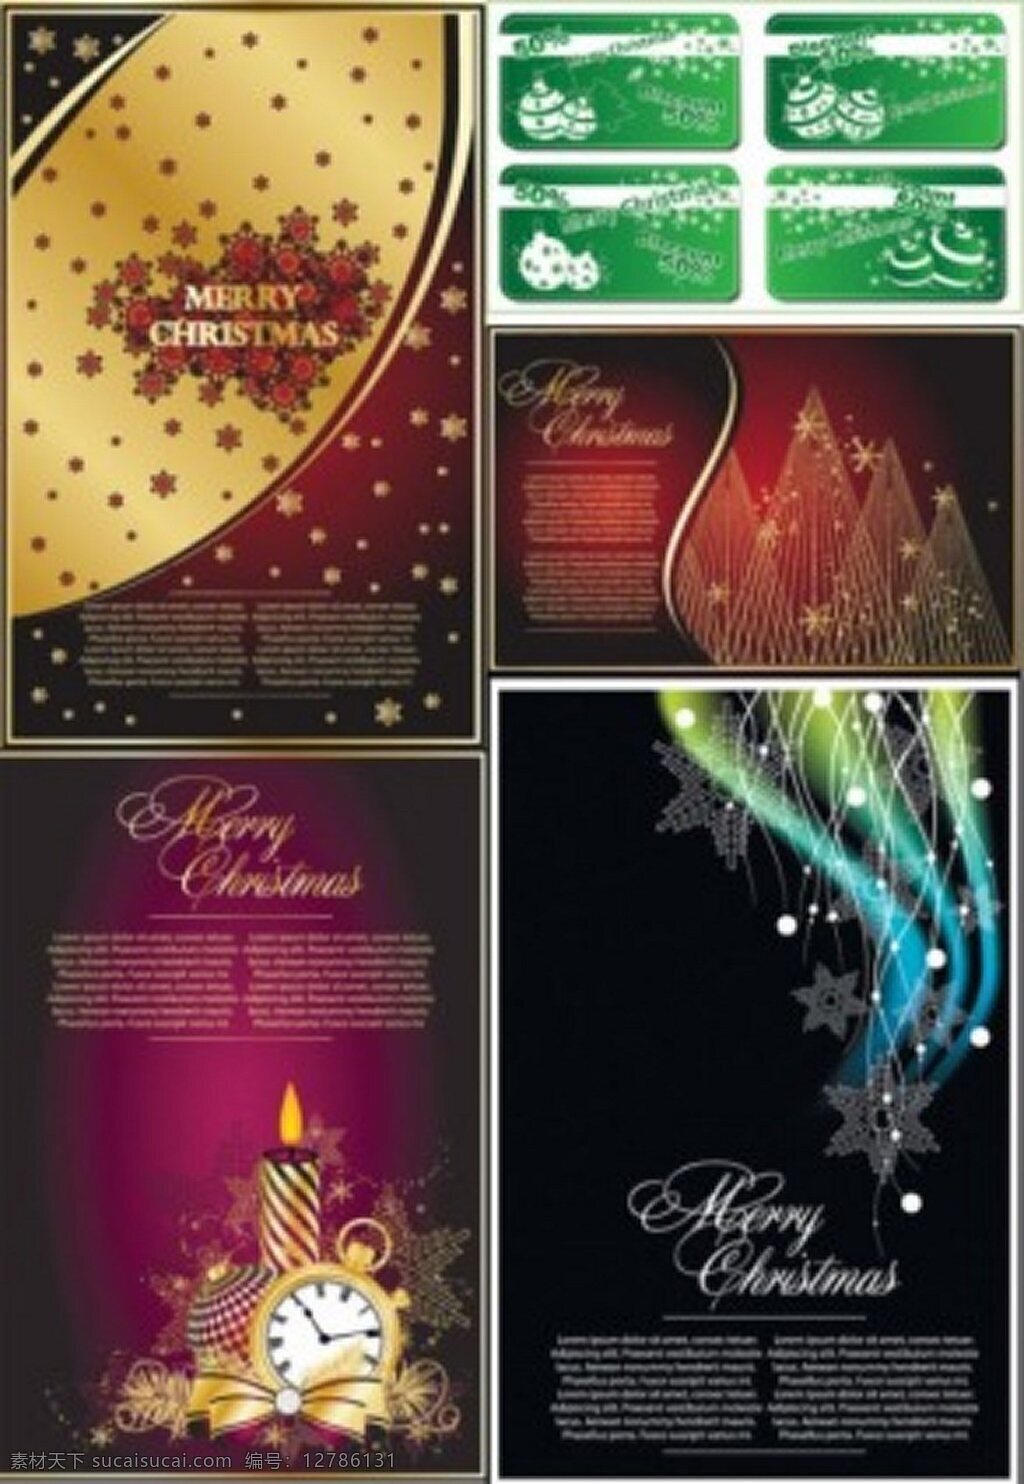 创意 经典 圣诞 背景 矢量图 广告背景 广告 背景素材 素材免费下载 圣诞节 蜡烛 矢量 紫色